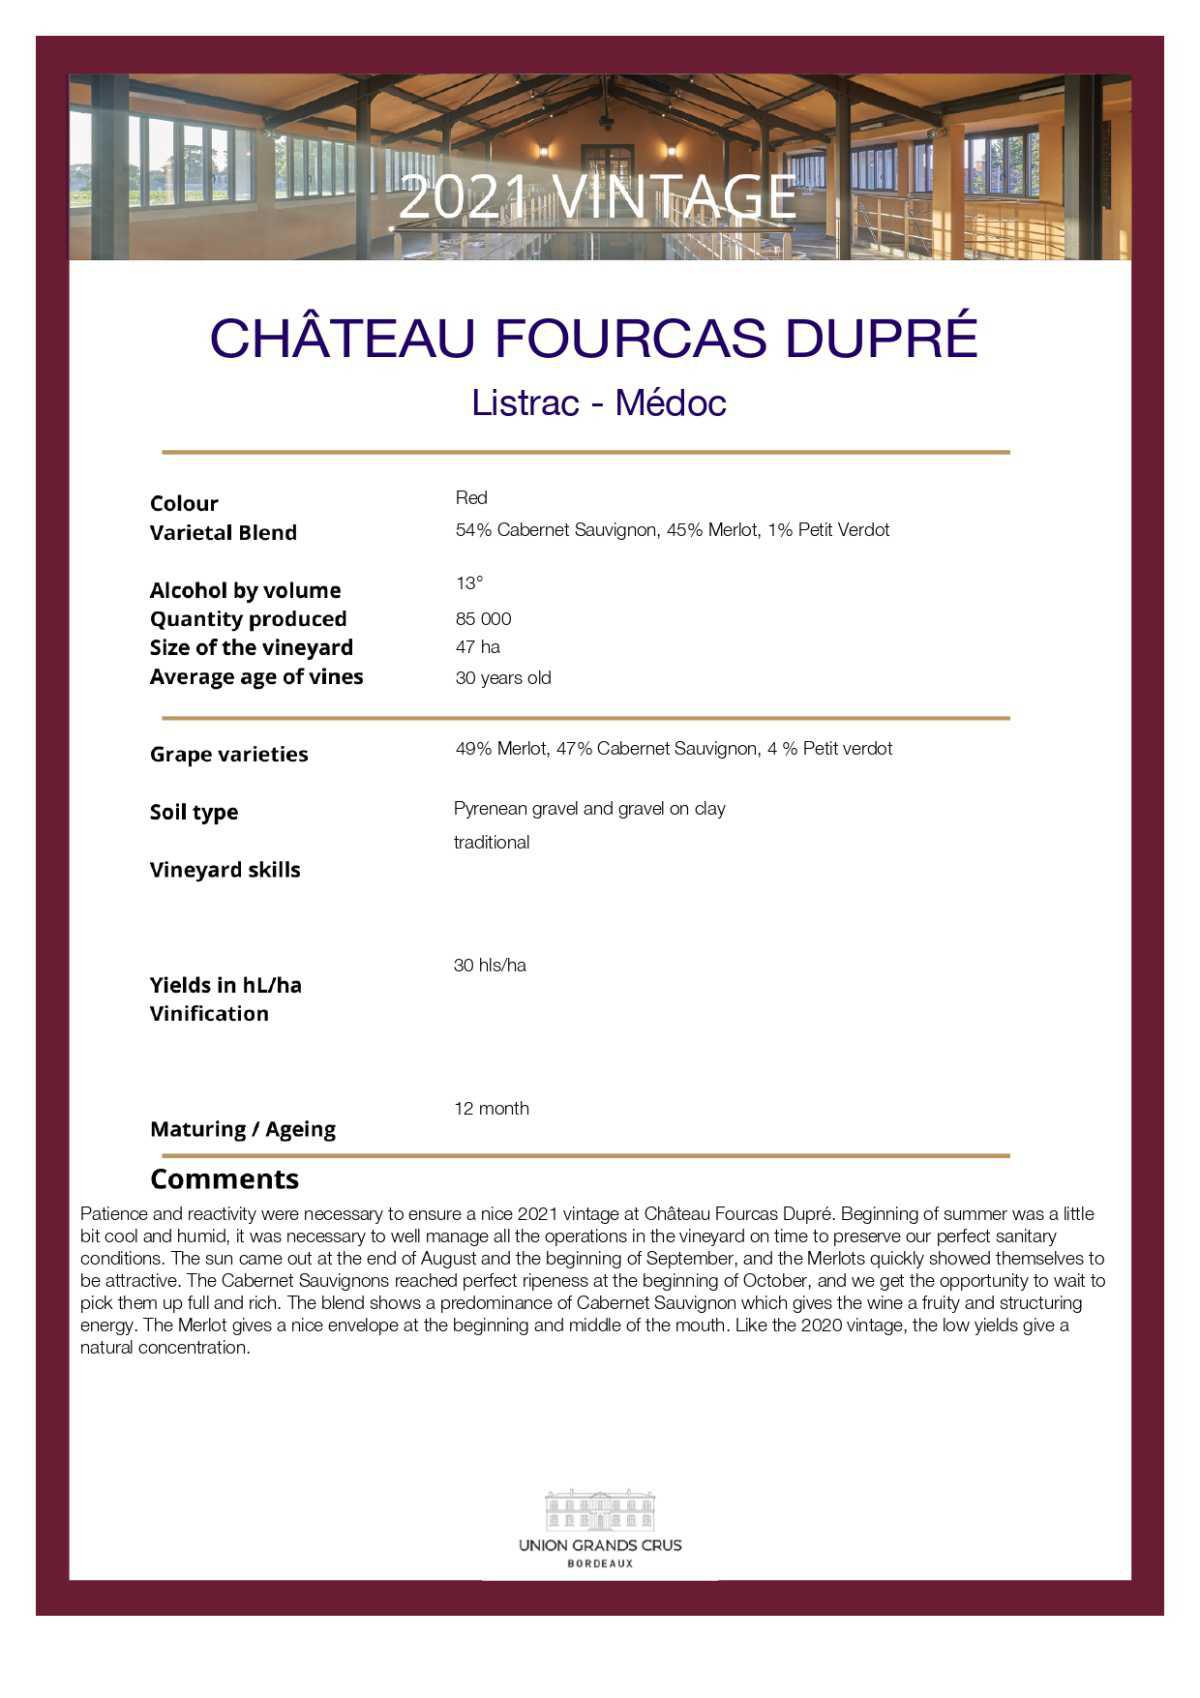 Château Fourcas Dupré